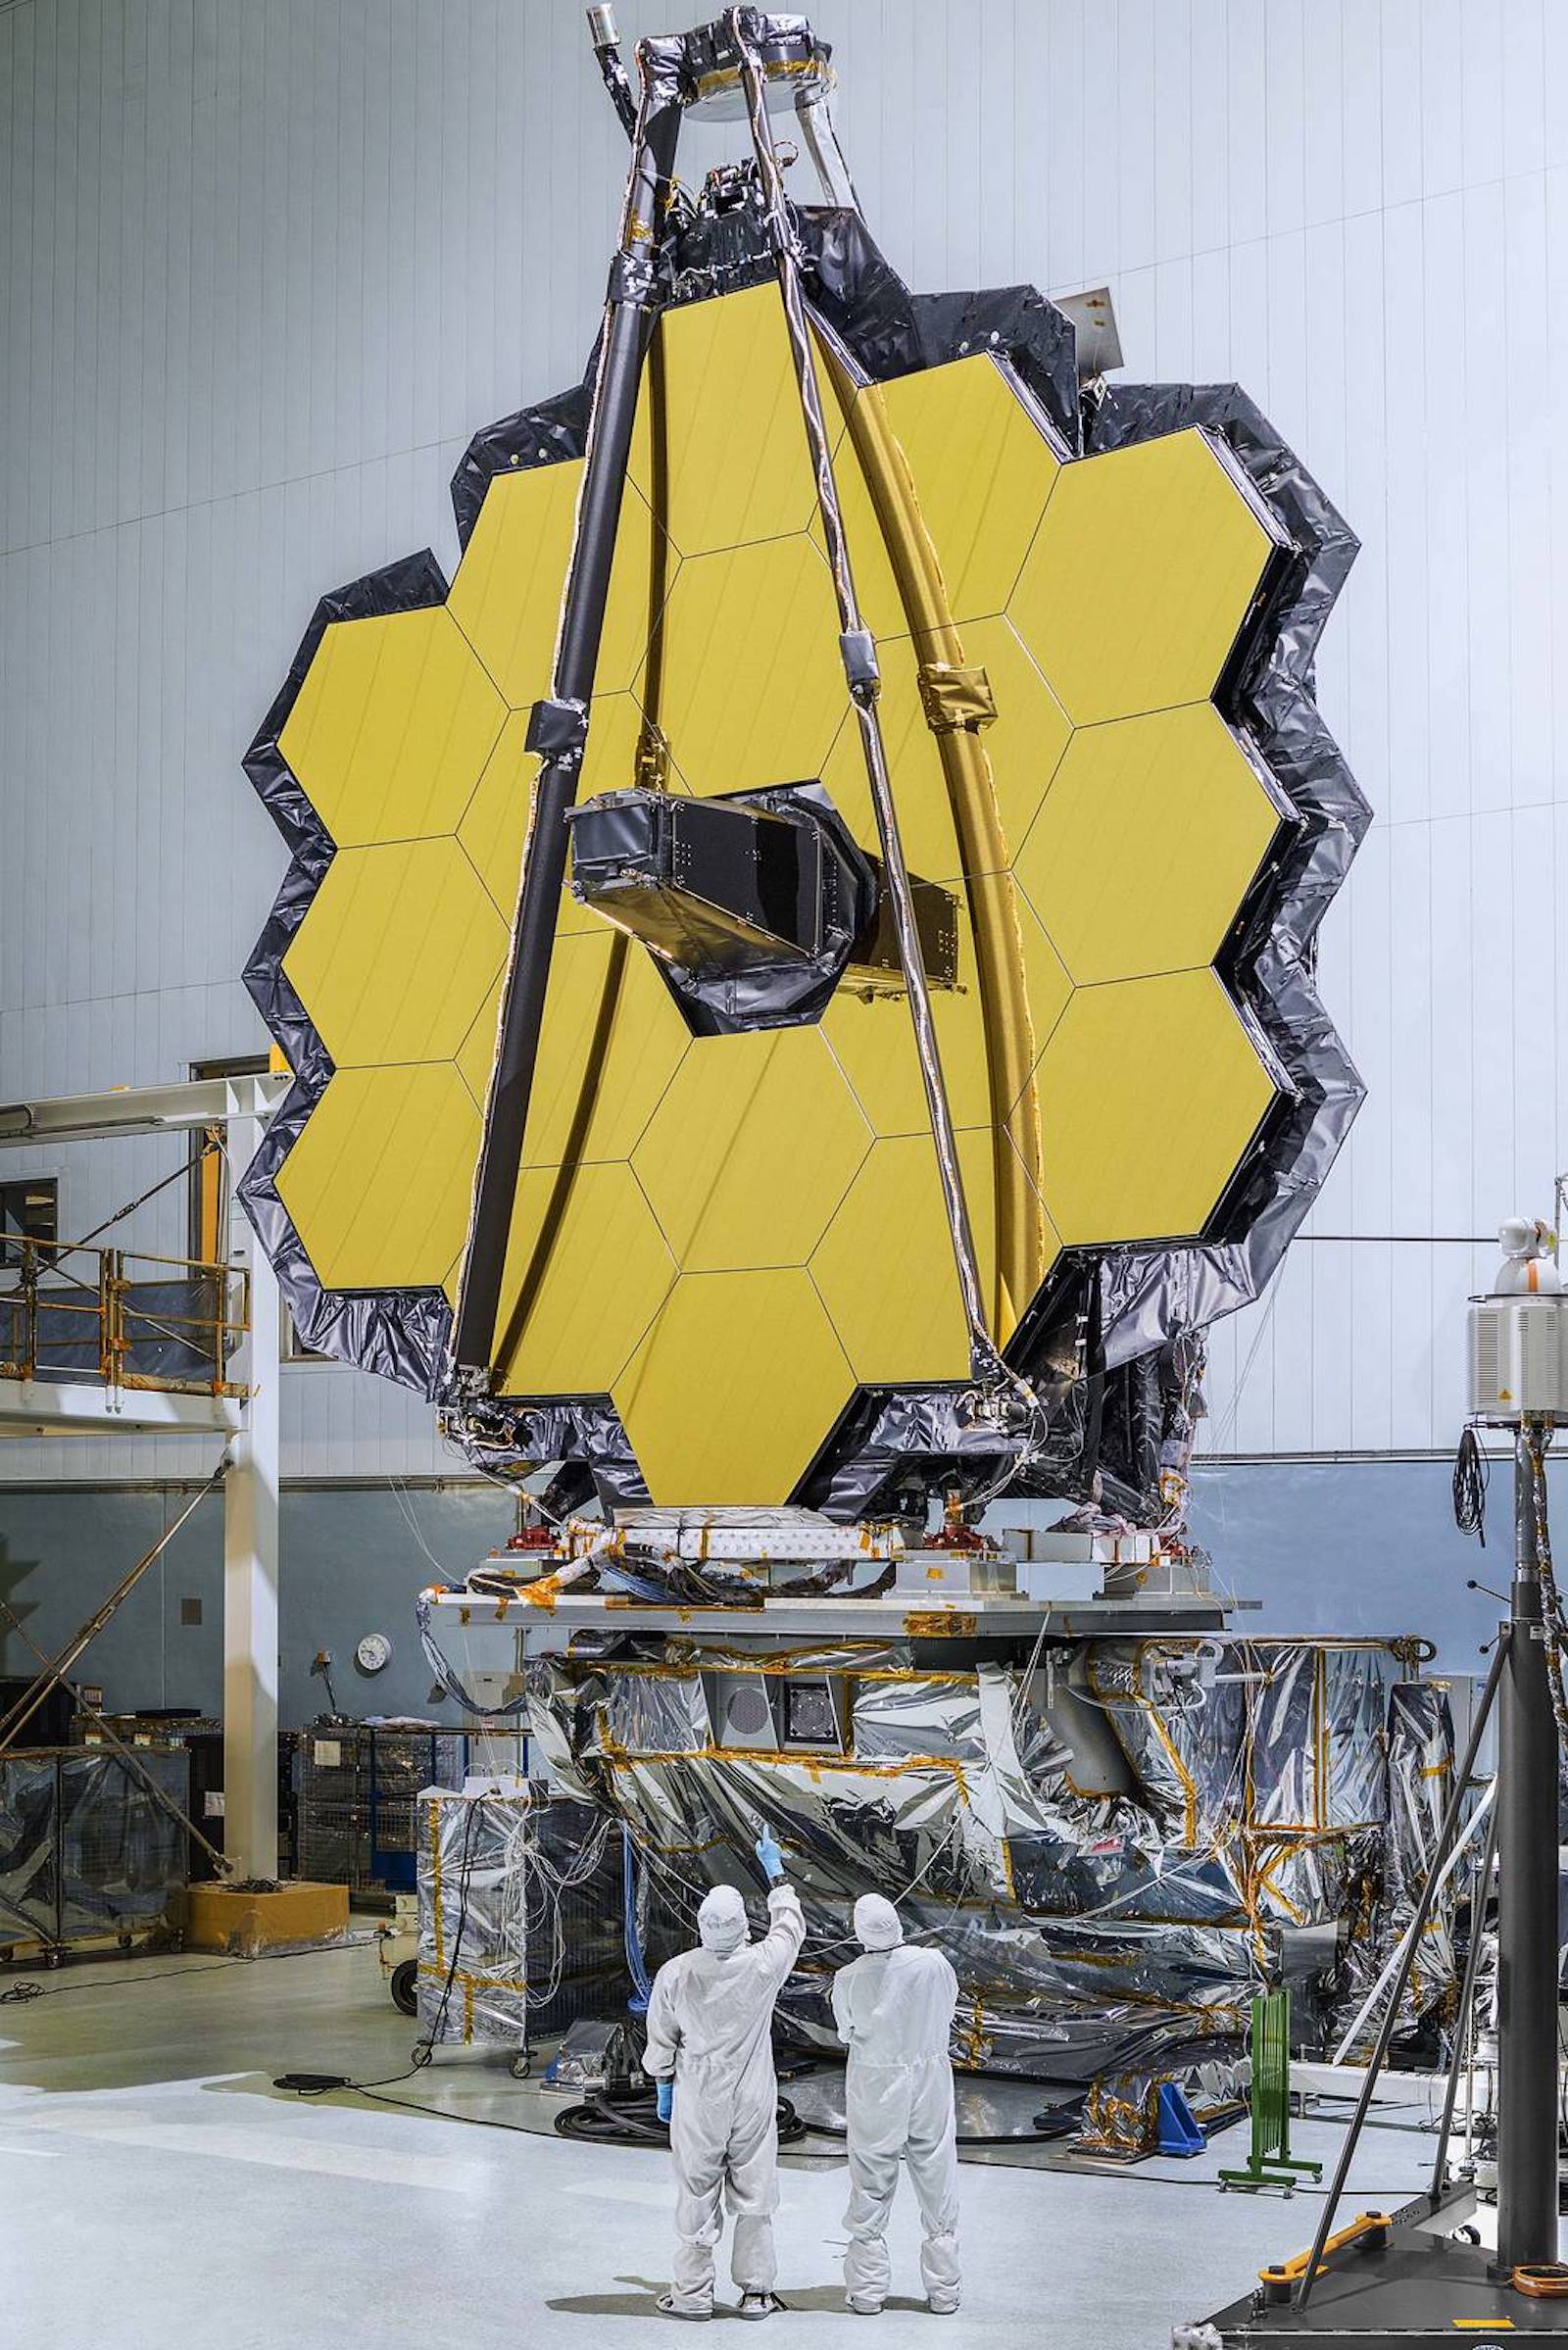 James Webb Uzay Teleskobu, ötegezegenlerden gelen kimyasal işaretleri tespit edebilen ilk teleskoptur, ancak yetenekleri sınırlıdır.